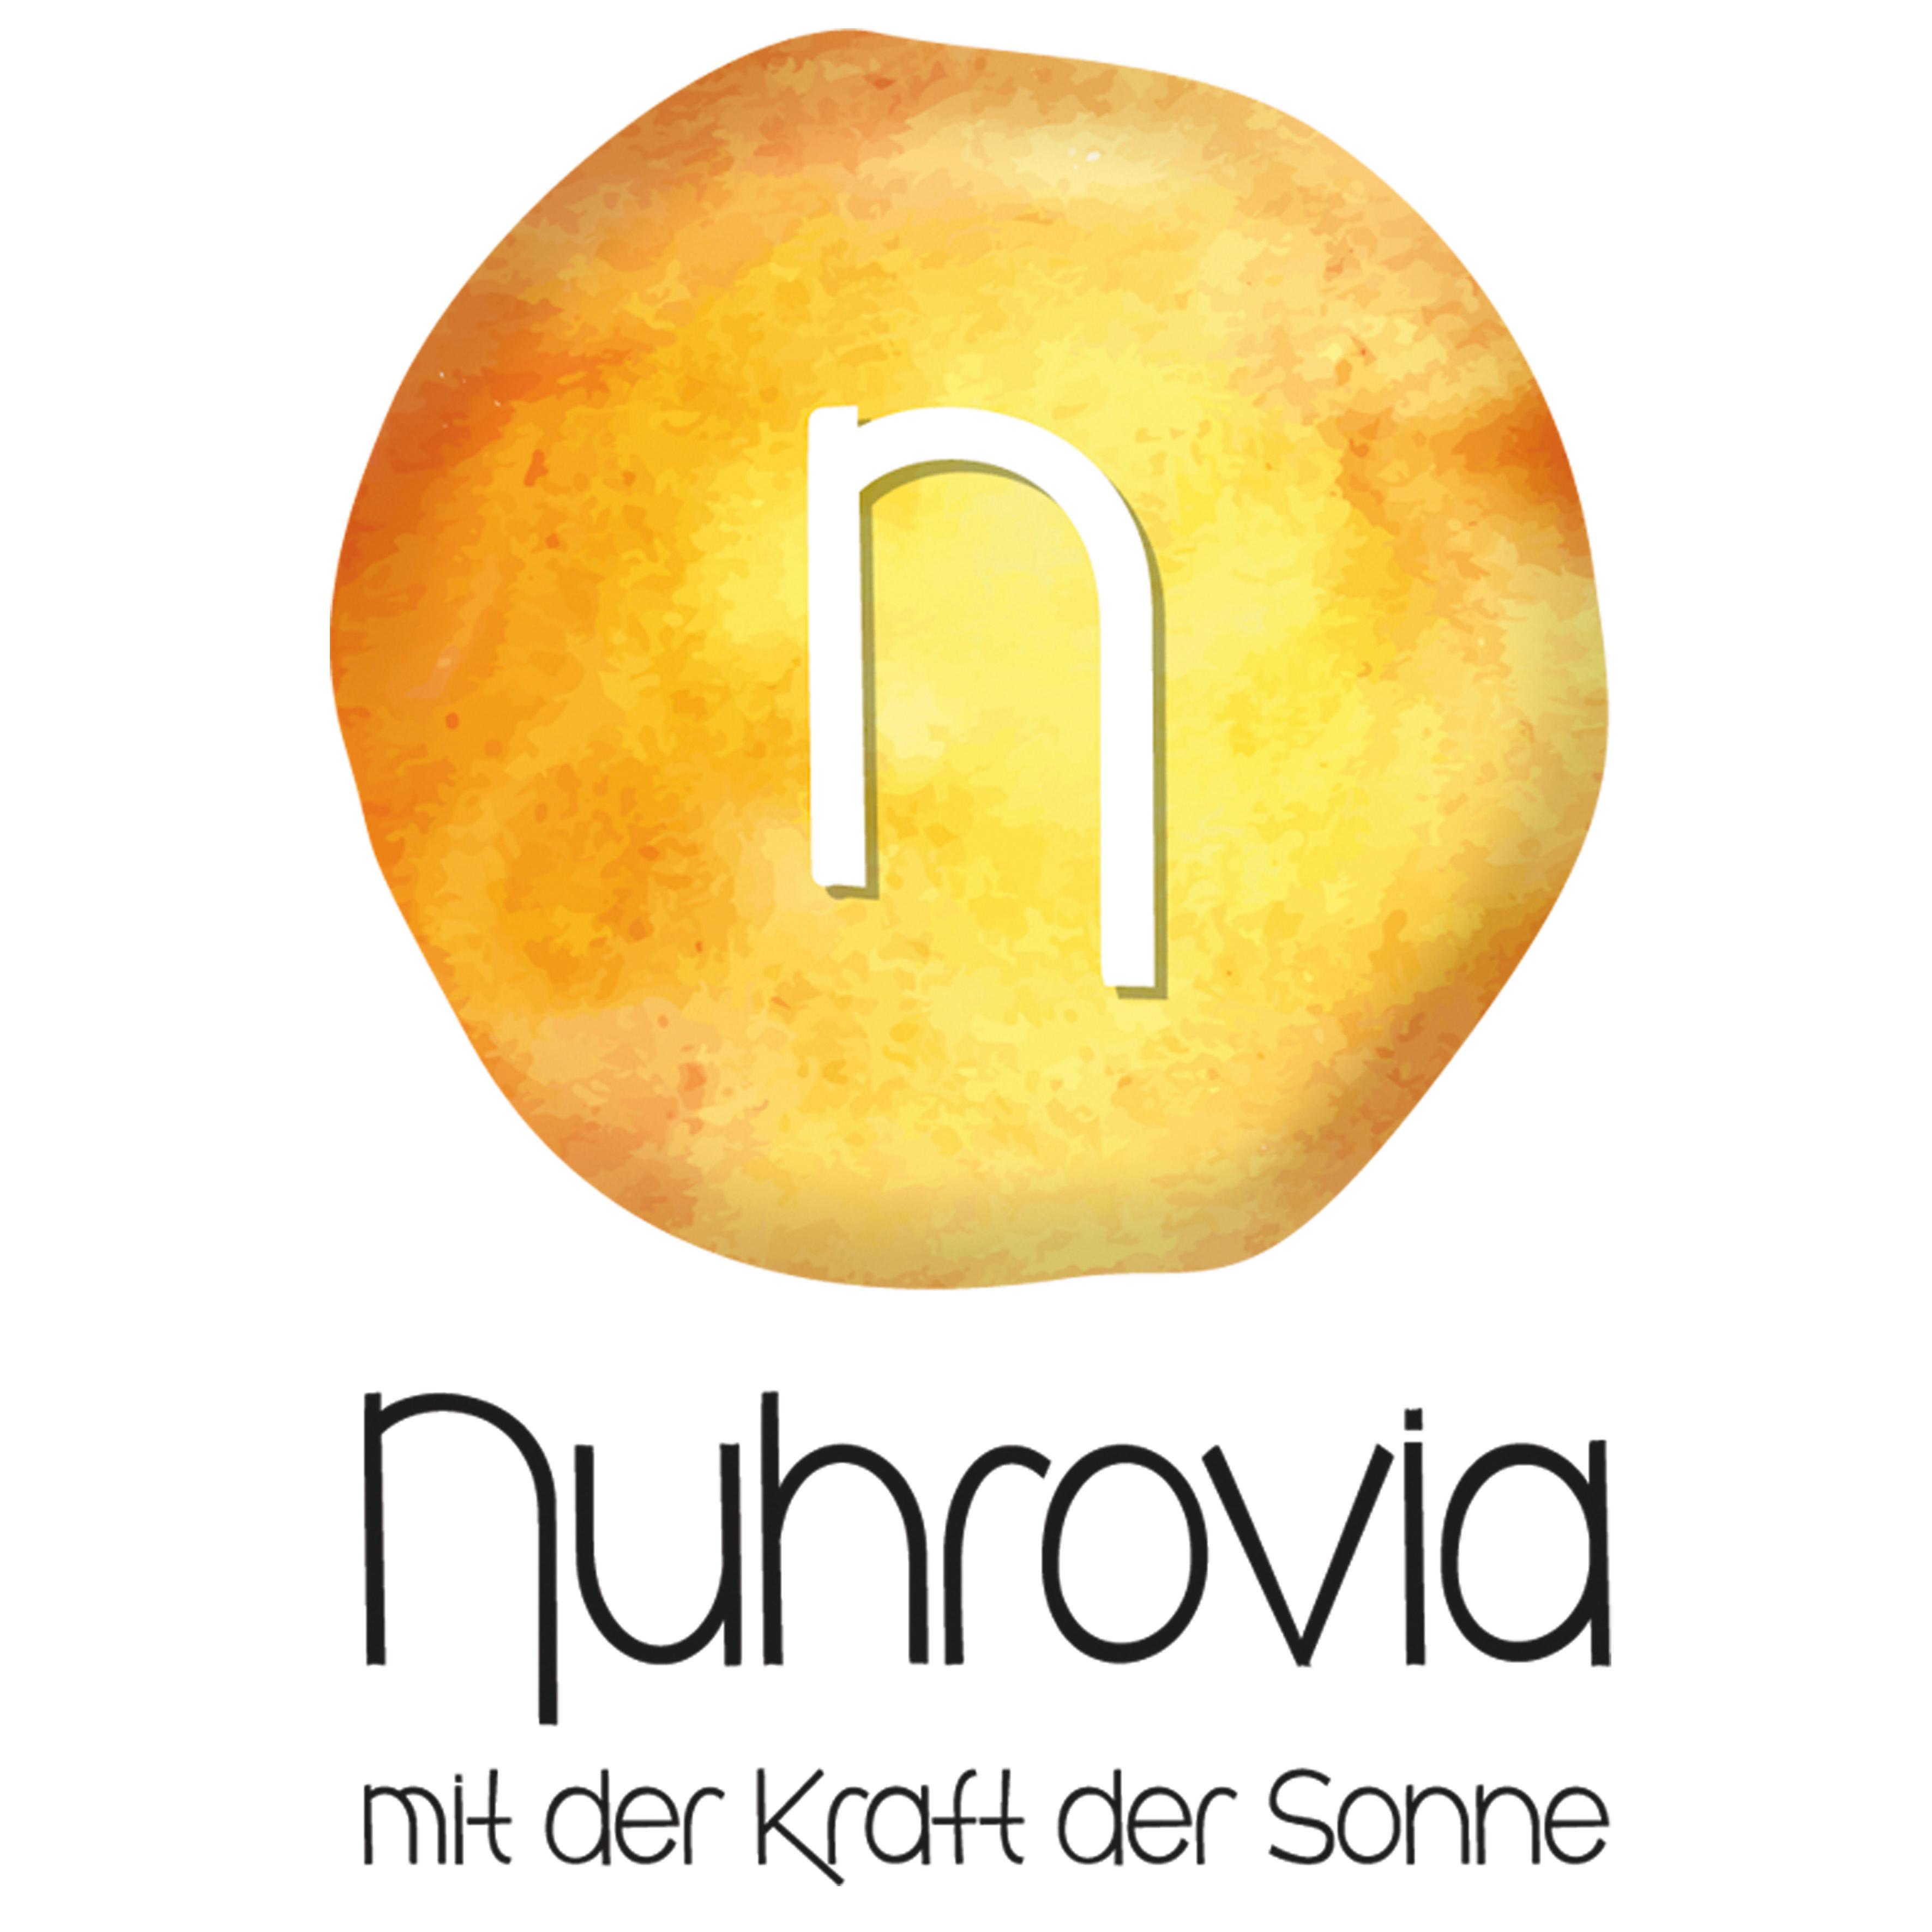 Nuhrovia – Naturessenzen mit der Kraft der Sonne Logo